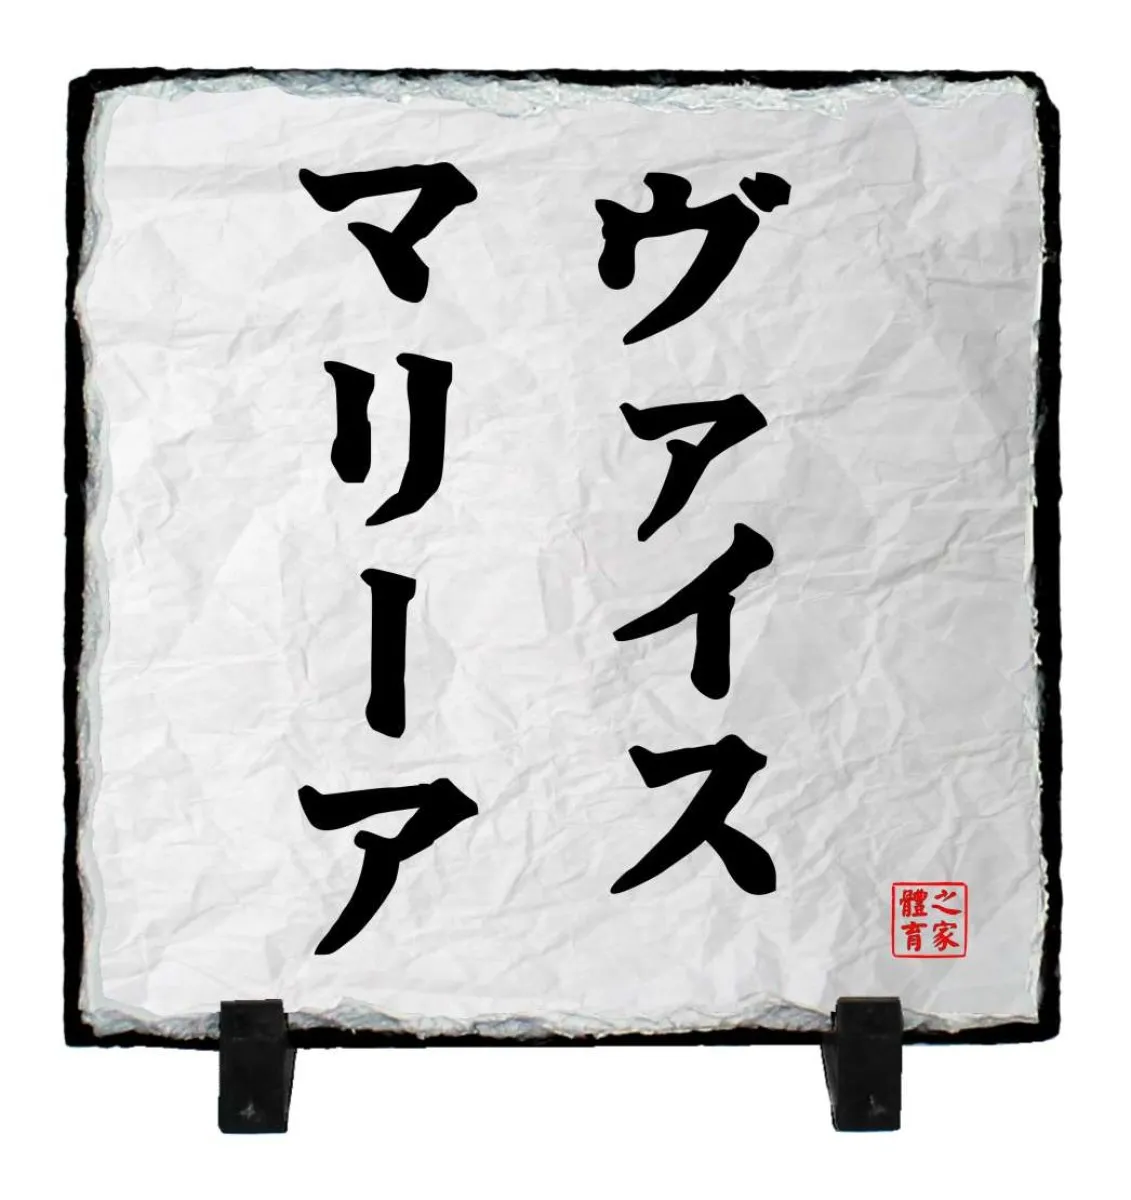 poster Funakoshi - Kopie - Kopie